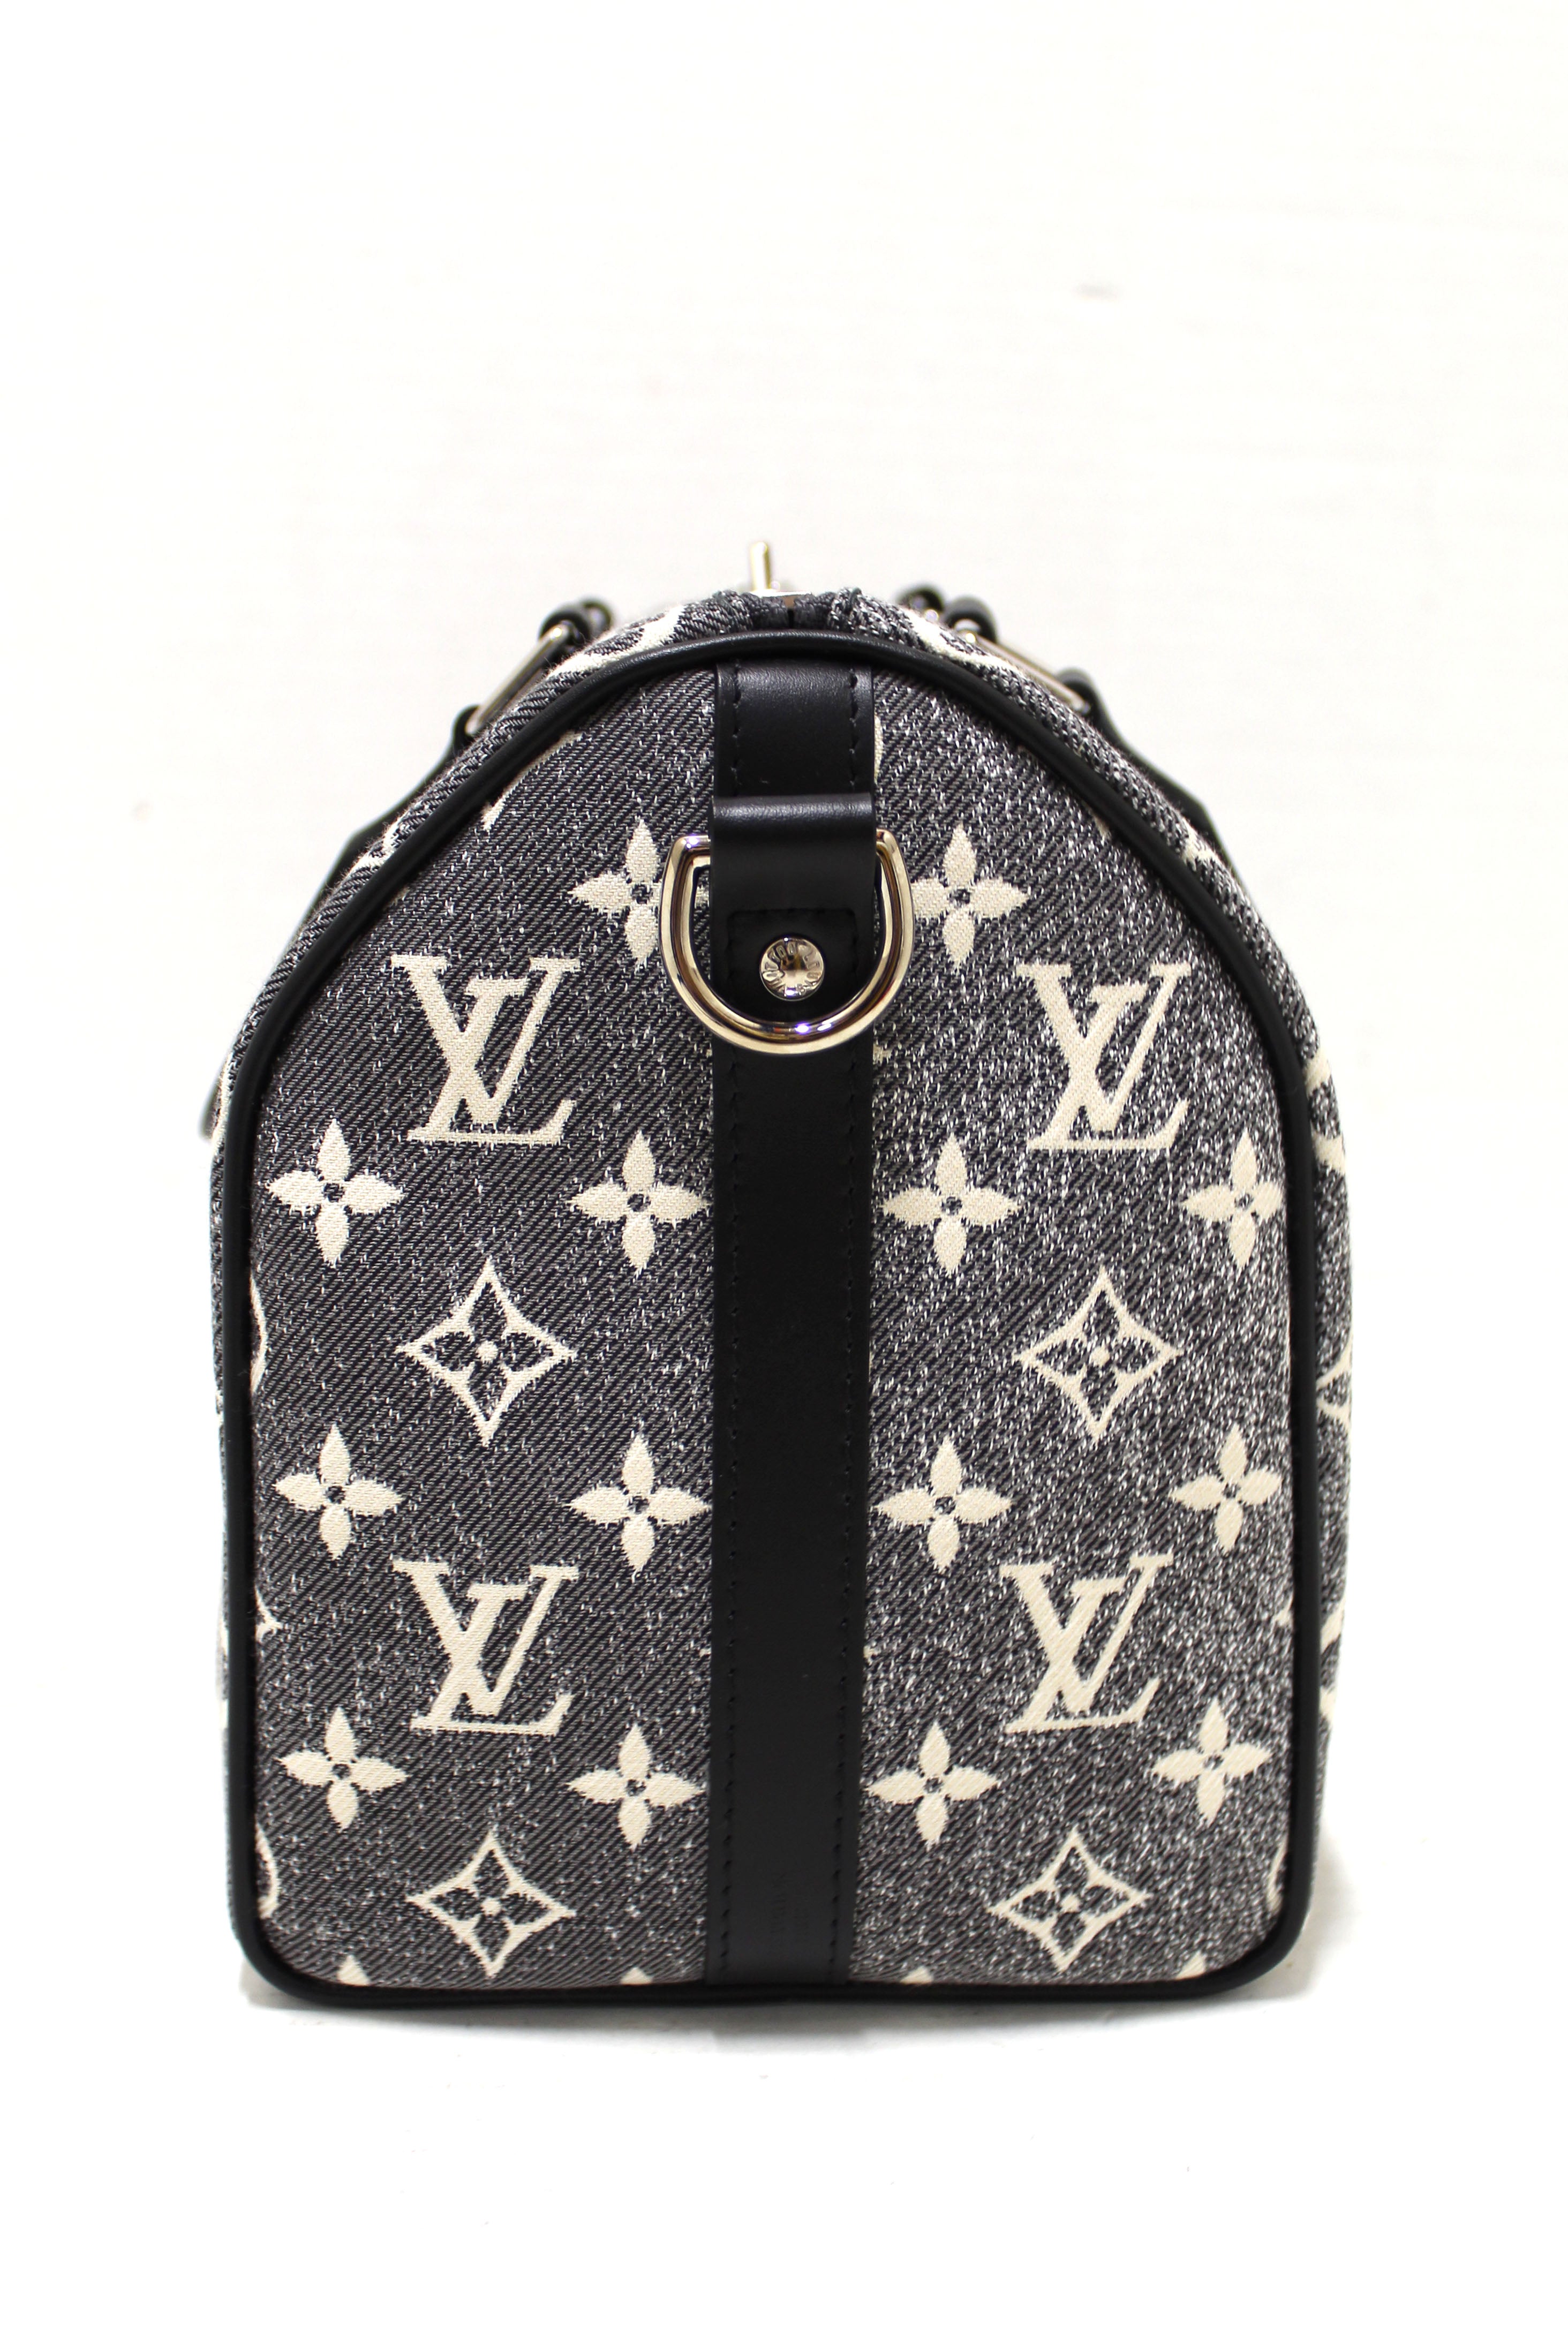 Authentic Louis Vuitton Monogram Grey Jacquard Denim Speedy 25 Bandouliere Bag